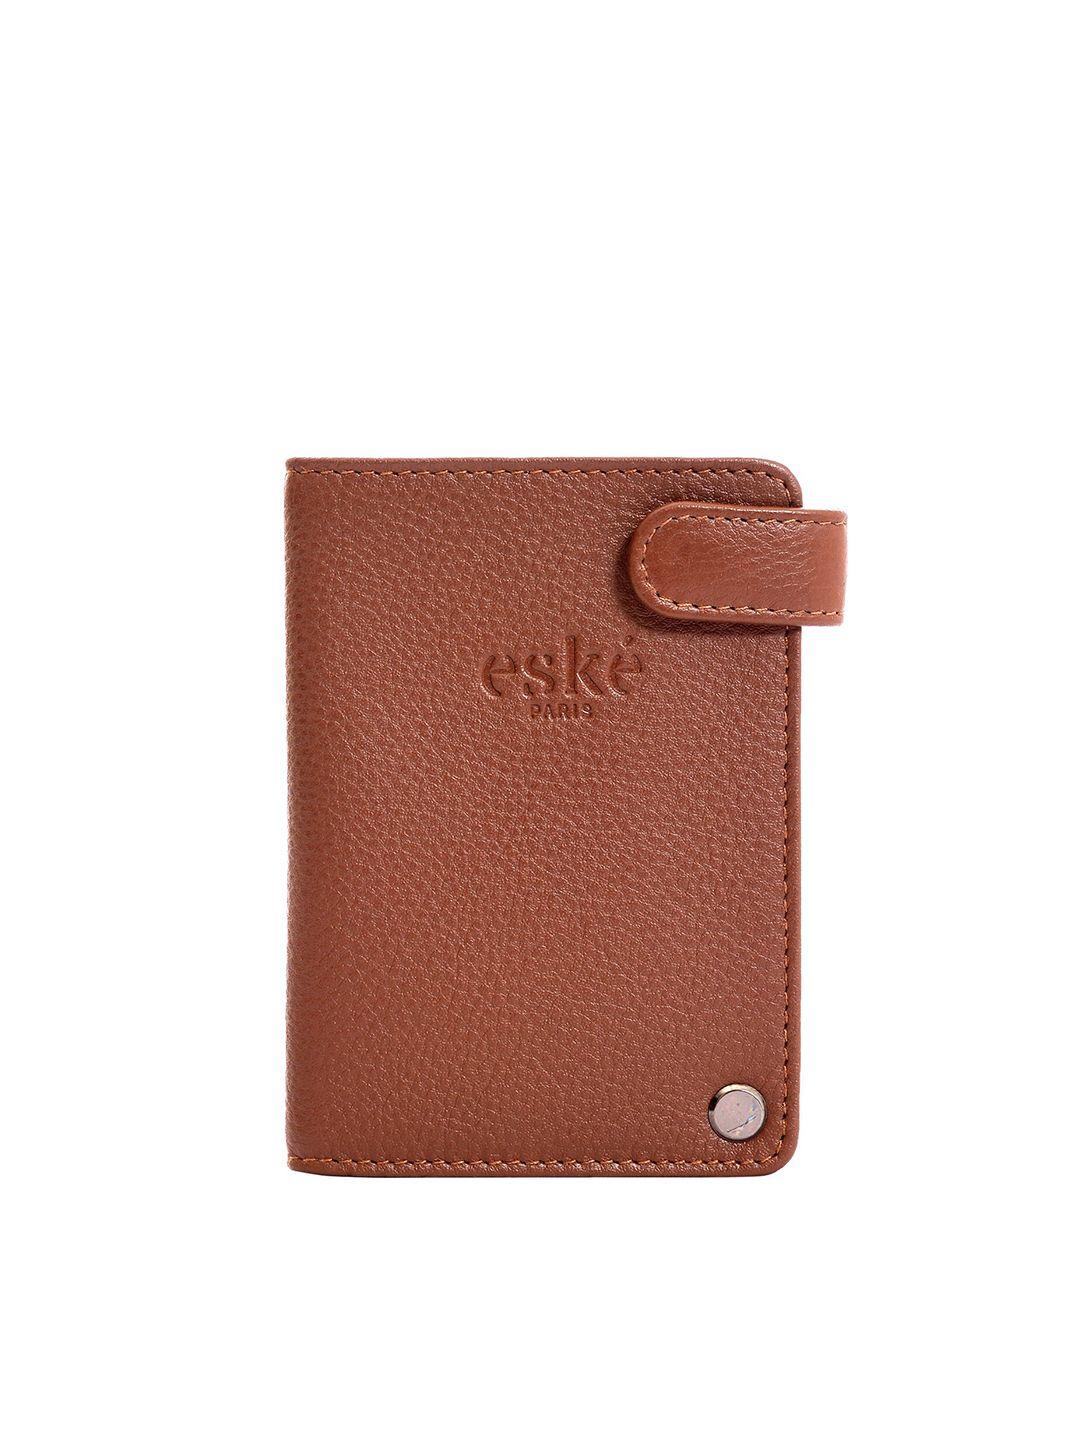 eske men textured leather card holder